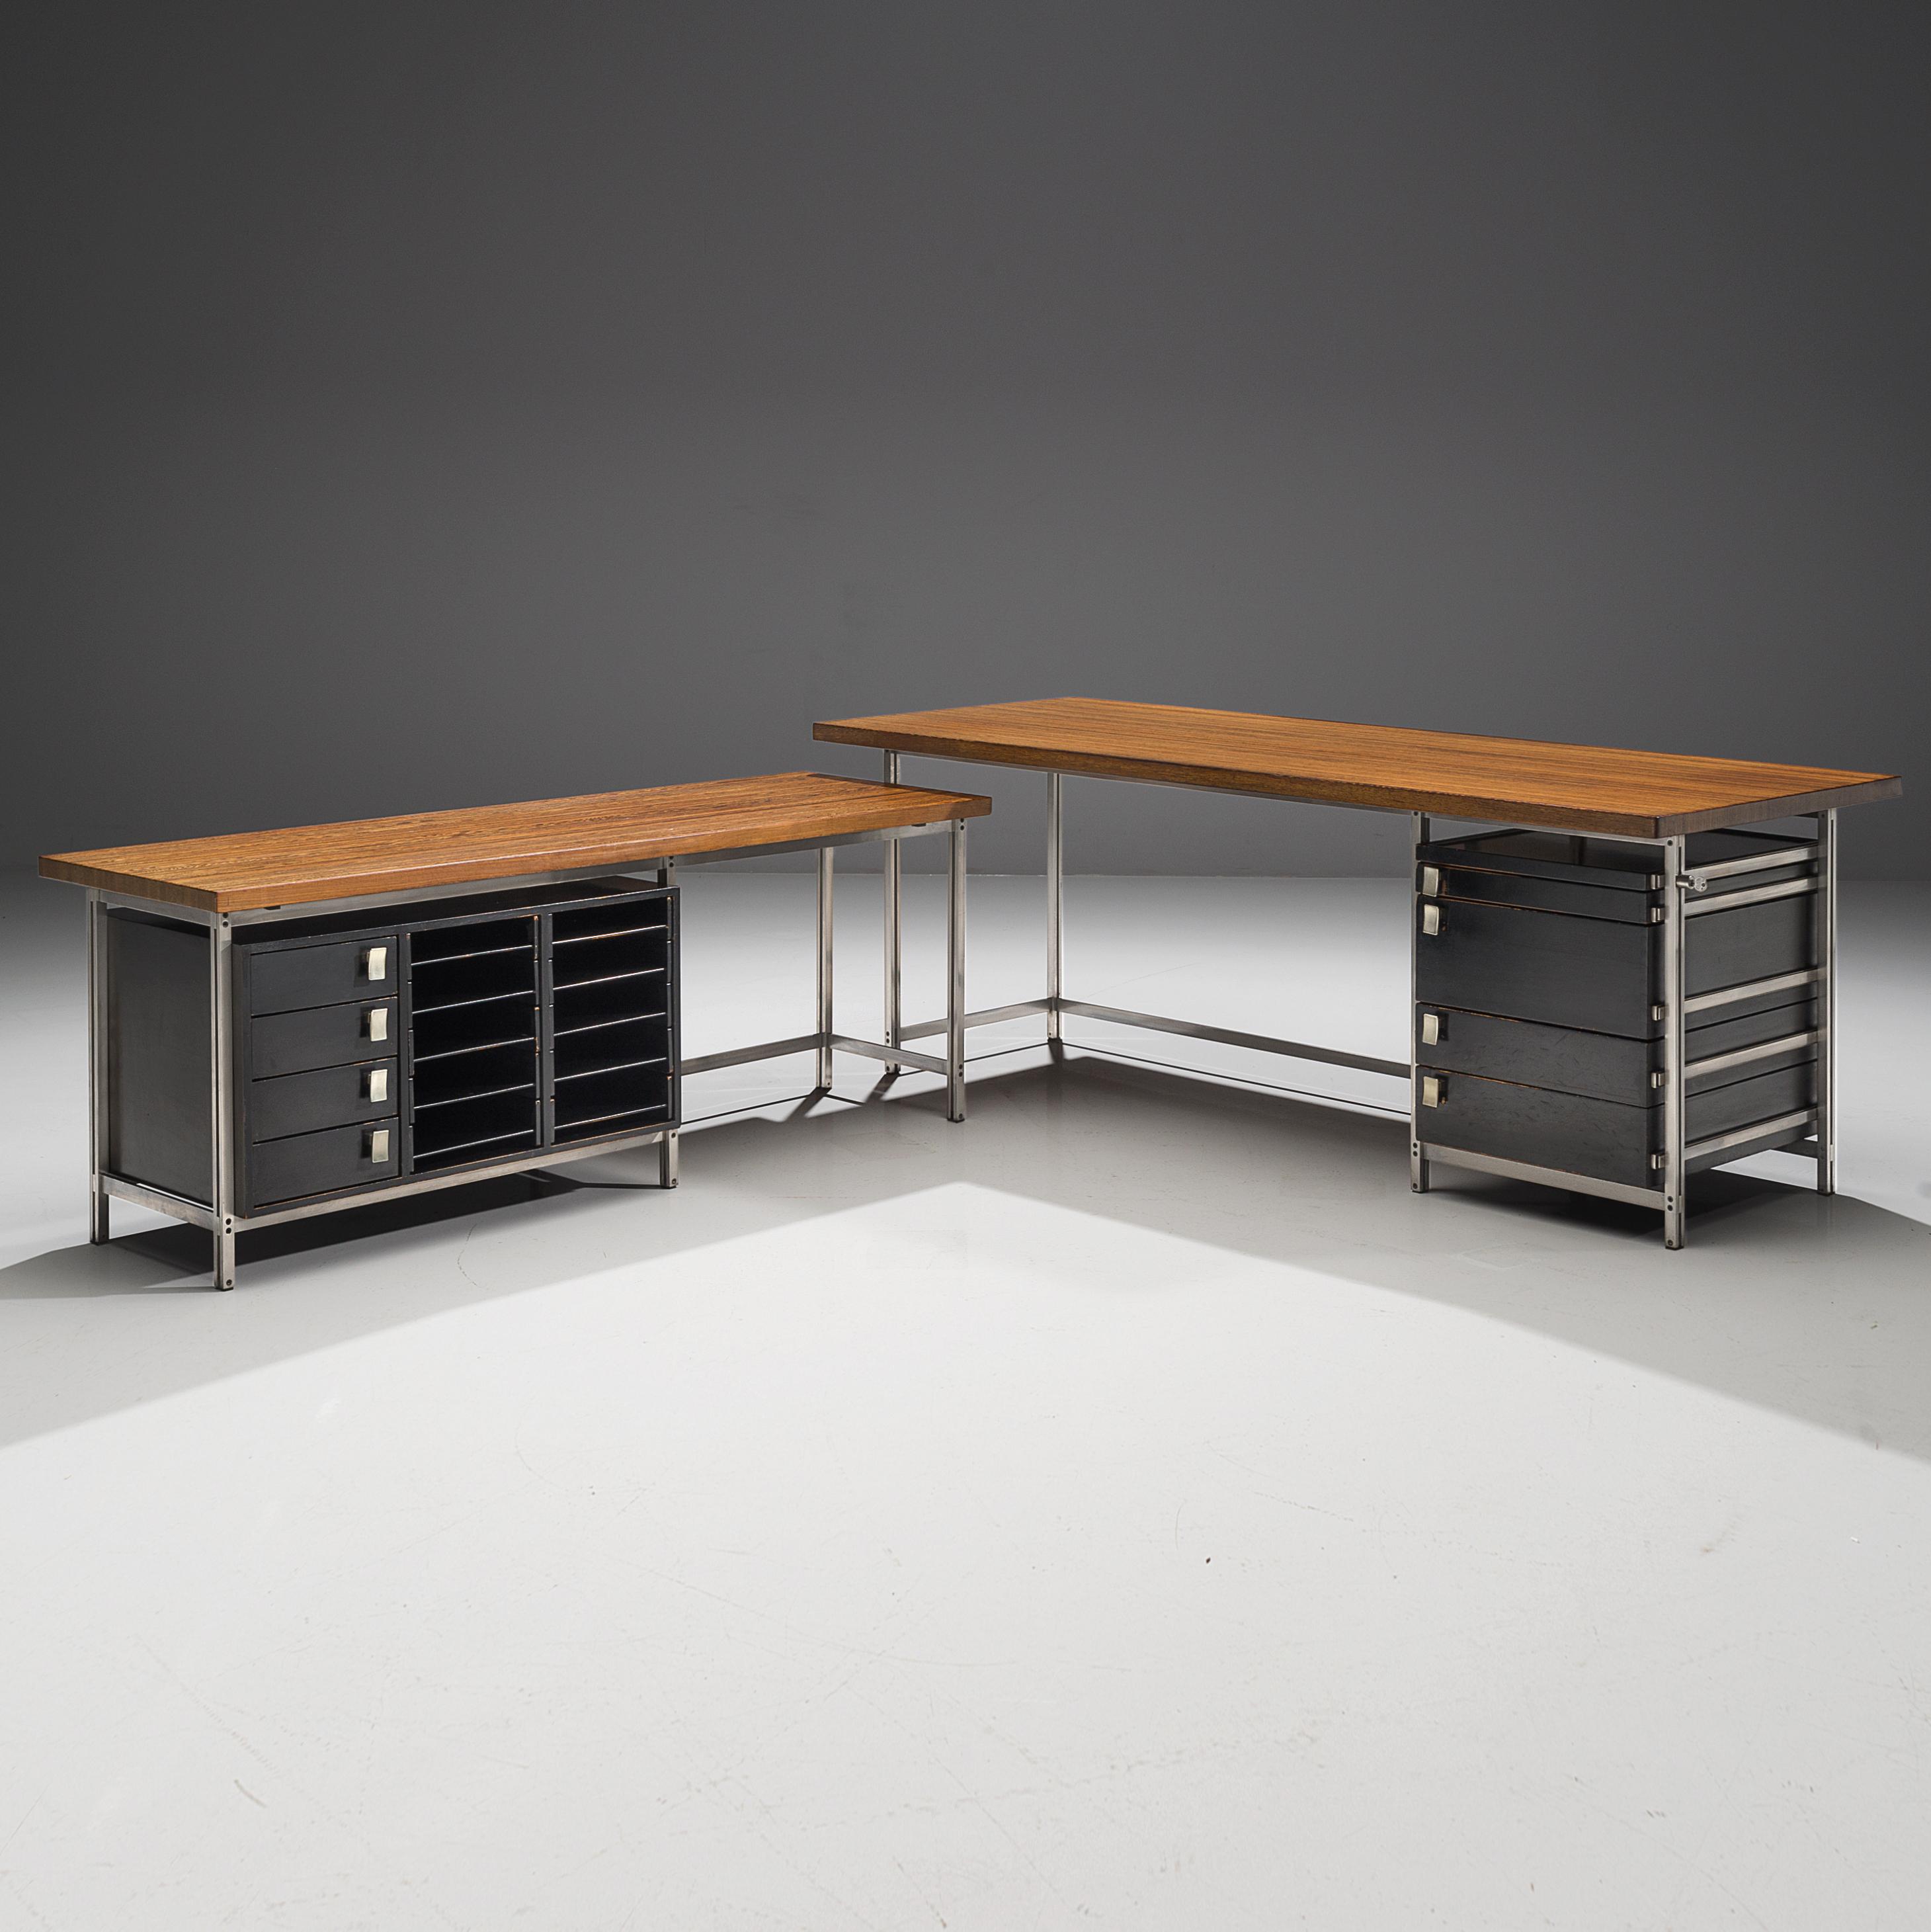 Jules Wabbes, Schreibtisch mit Schubladenfächern, Wengé, Metall, lackiertes Holz, Belgien, 1960er Jahre.

Dieser Eckschreibtisch ist ein Entwurf von Jules Wabbes. Der Tisch ist mit einer massiven Wengé-Holzplatte ausgestattet, die aus tangential